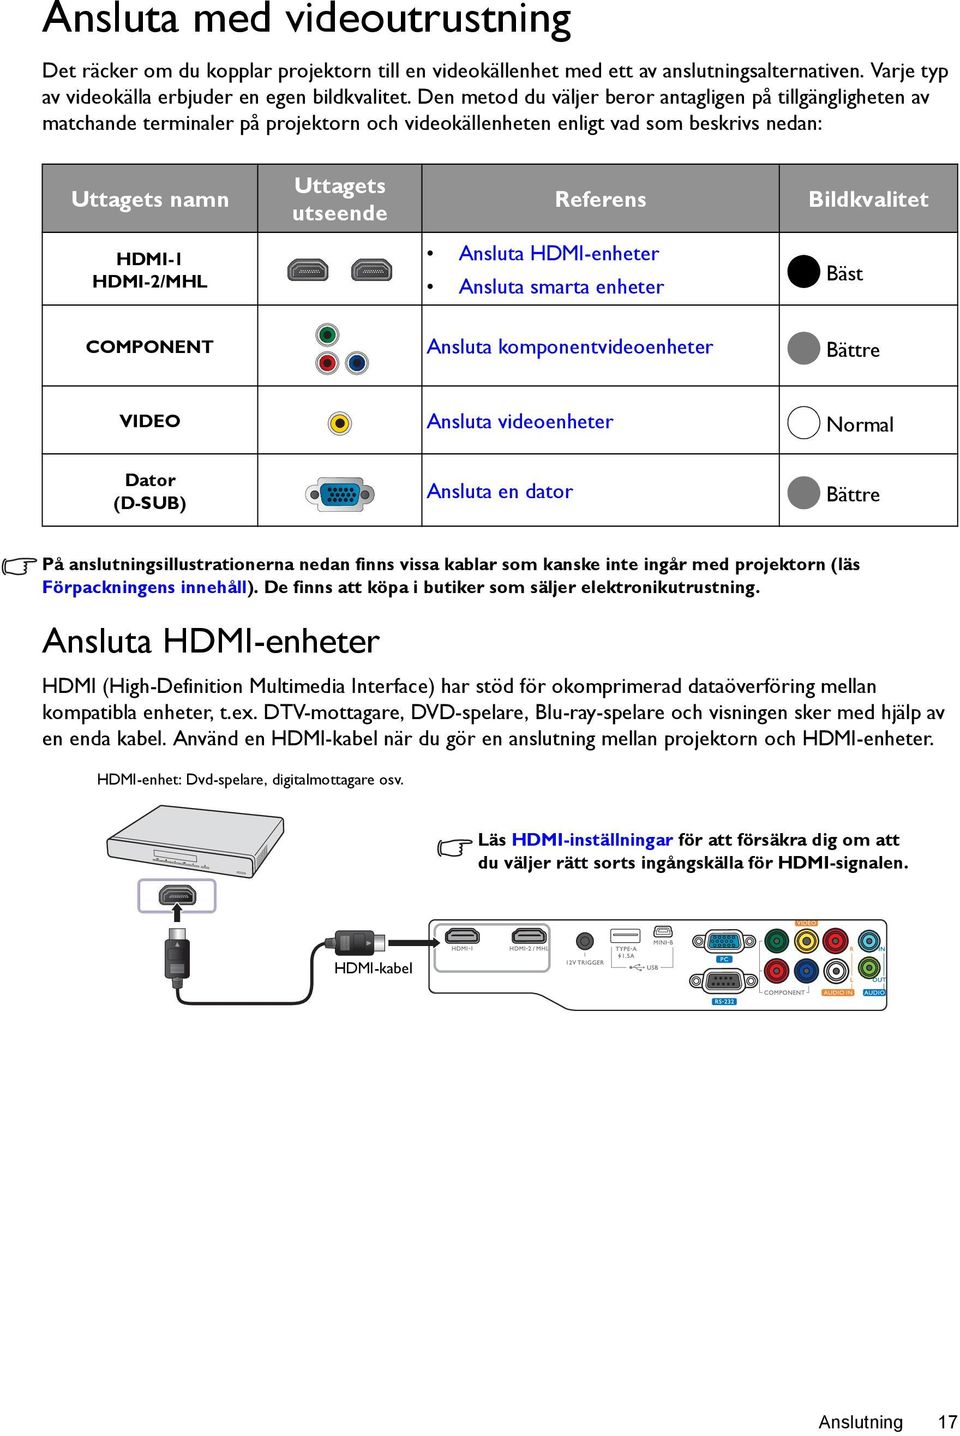 Bildkvalitet HDMI-1 HDMI-2/MHL Ansluta HDMI-enheter Ansluta smarta enheter Bäst COMPONENT Ansluta komponentvideoenheter Bättre VIDEO Ansluta videoenheter Normal Dator (D-SUB) Ansluta en dator Bättre